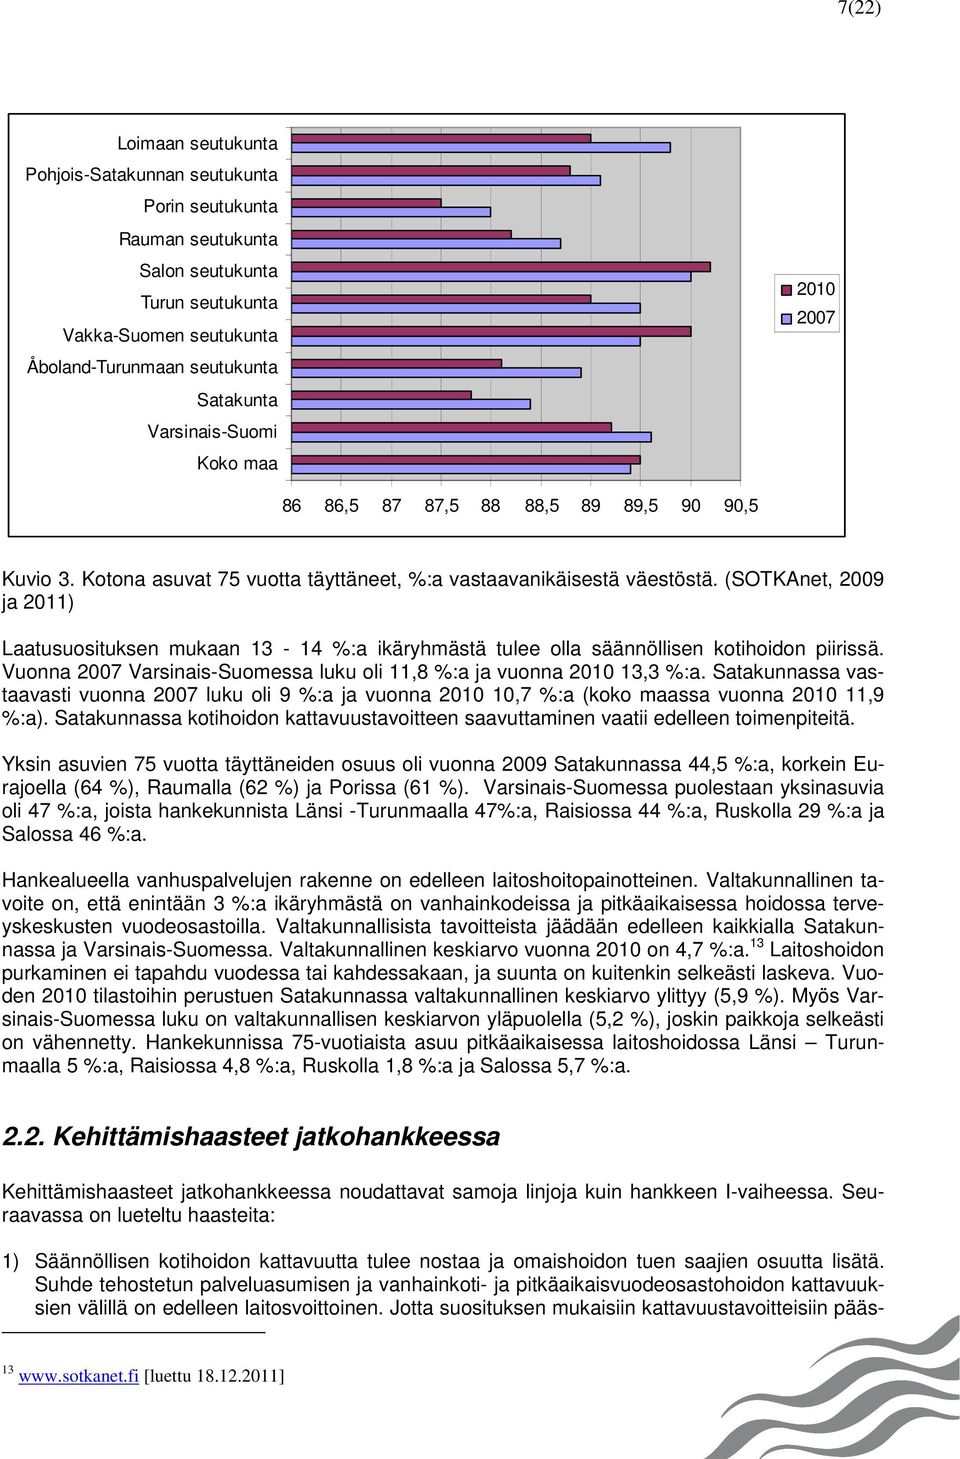 (SOTKAnet, 2009 ja 2011) Laatusuosituksen mukaan 13-14 %:a ikäryhmästä tulee olla säännöllisen kotihoidon piirissä. Vuonna 2007 Varsinais-Suomessa luku oli 11,8 %:a ja vuonna 2010 13,3 %:a.